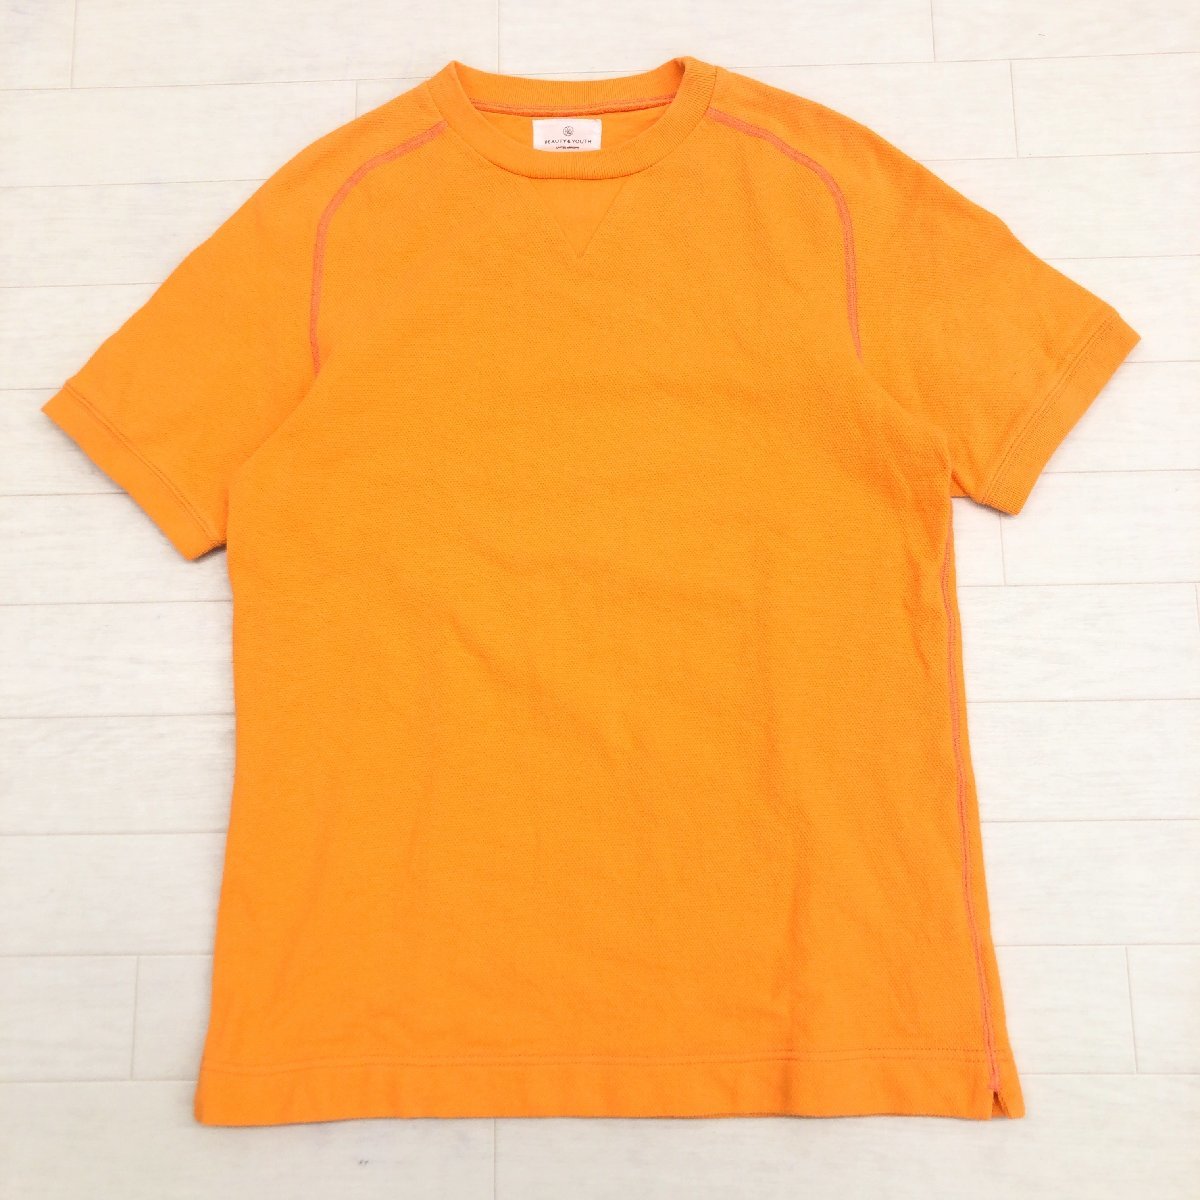 B&Y UNITED ARROWS ユナイテッドアローズ ワッフル生地 Tシャツ M オレンジ 半袖 国内正規品 メンズ 紳士_画像1